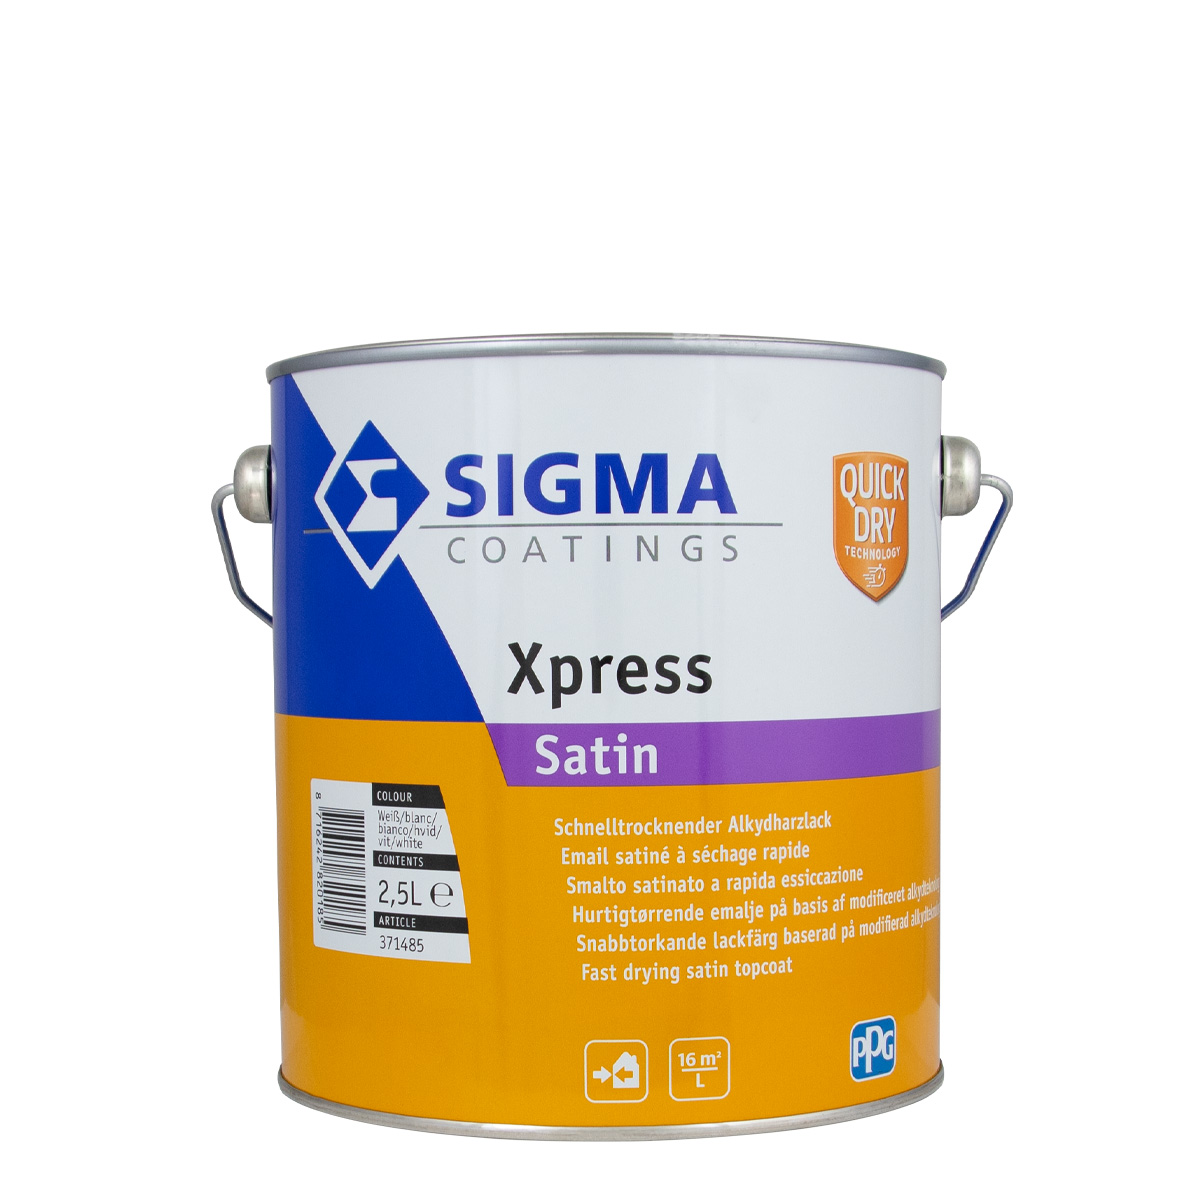 Sigma_Xpress_Satin_2,5l_gross